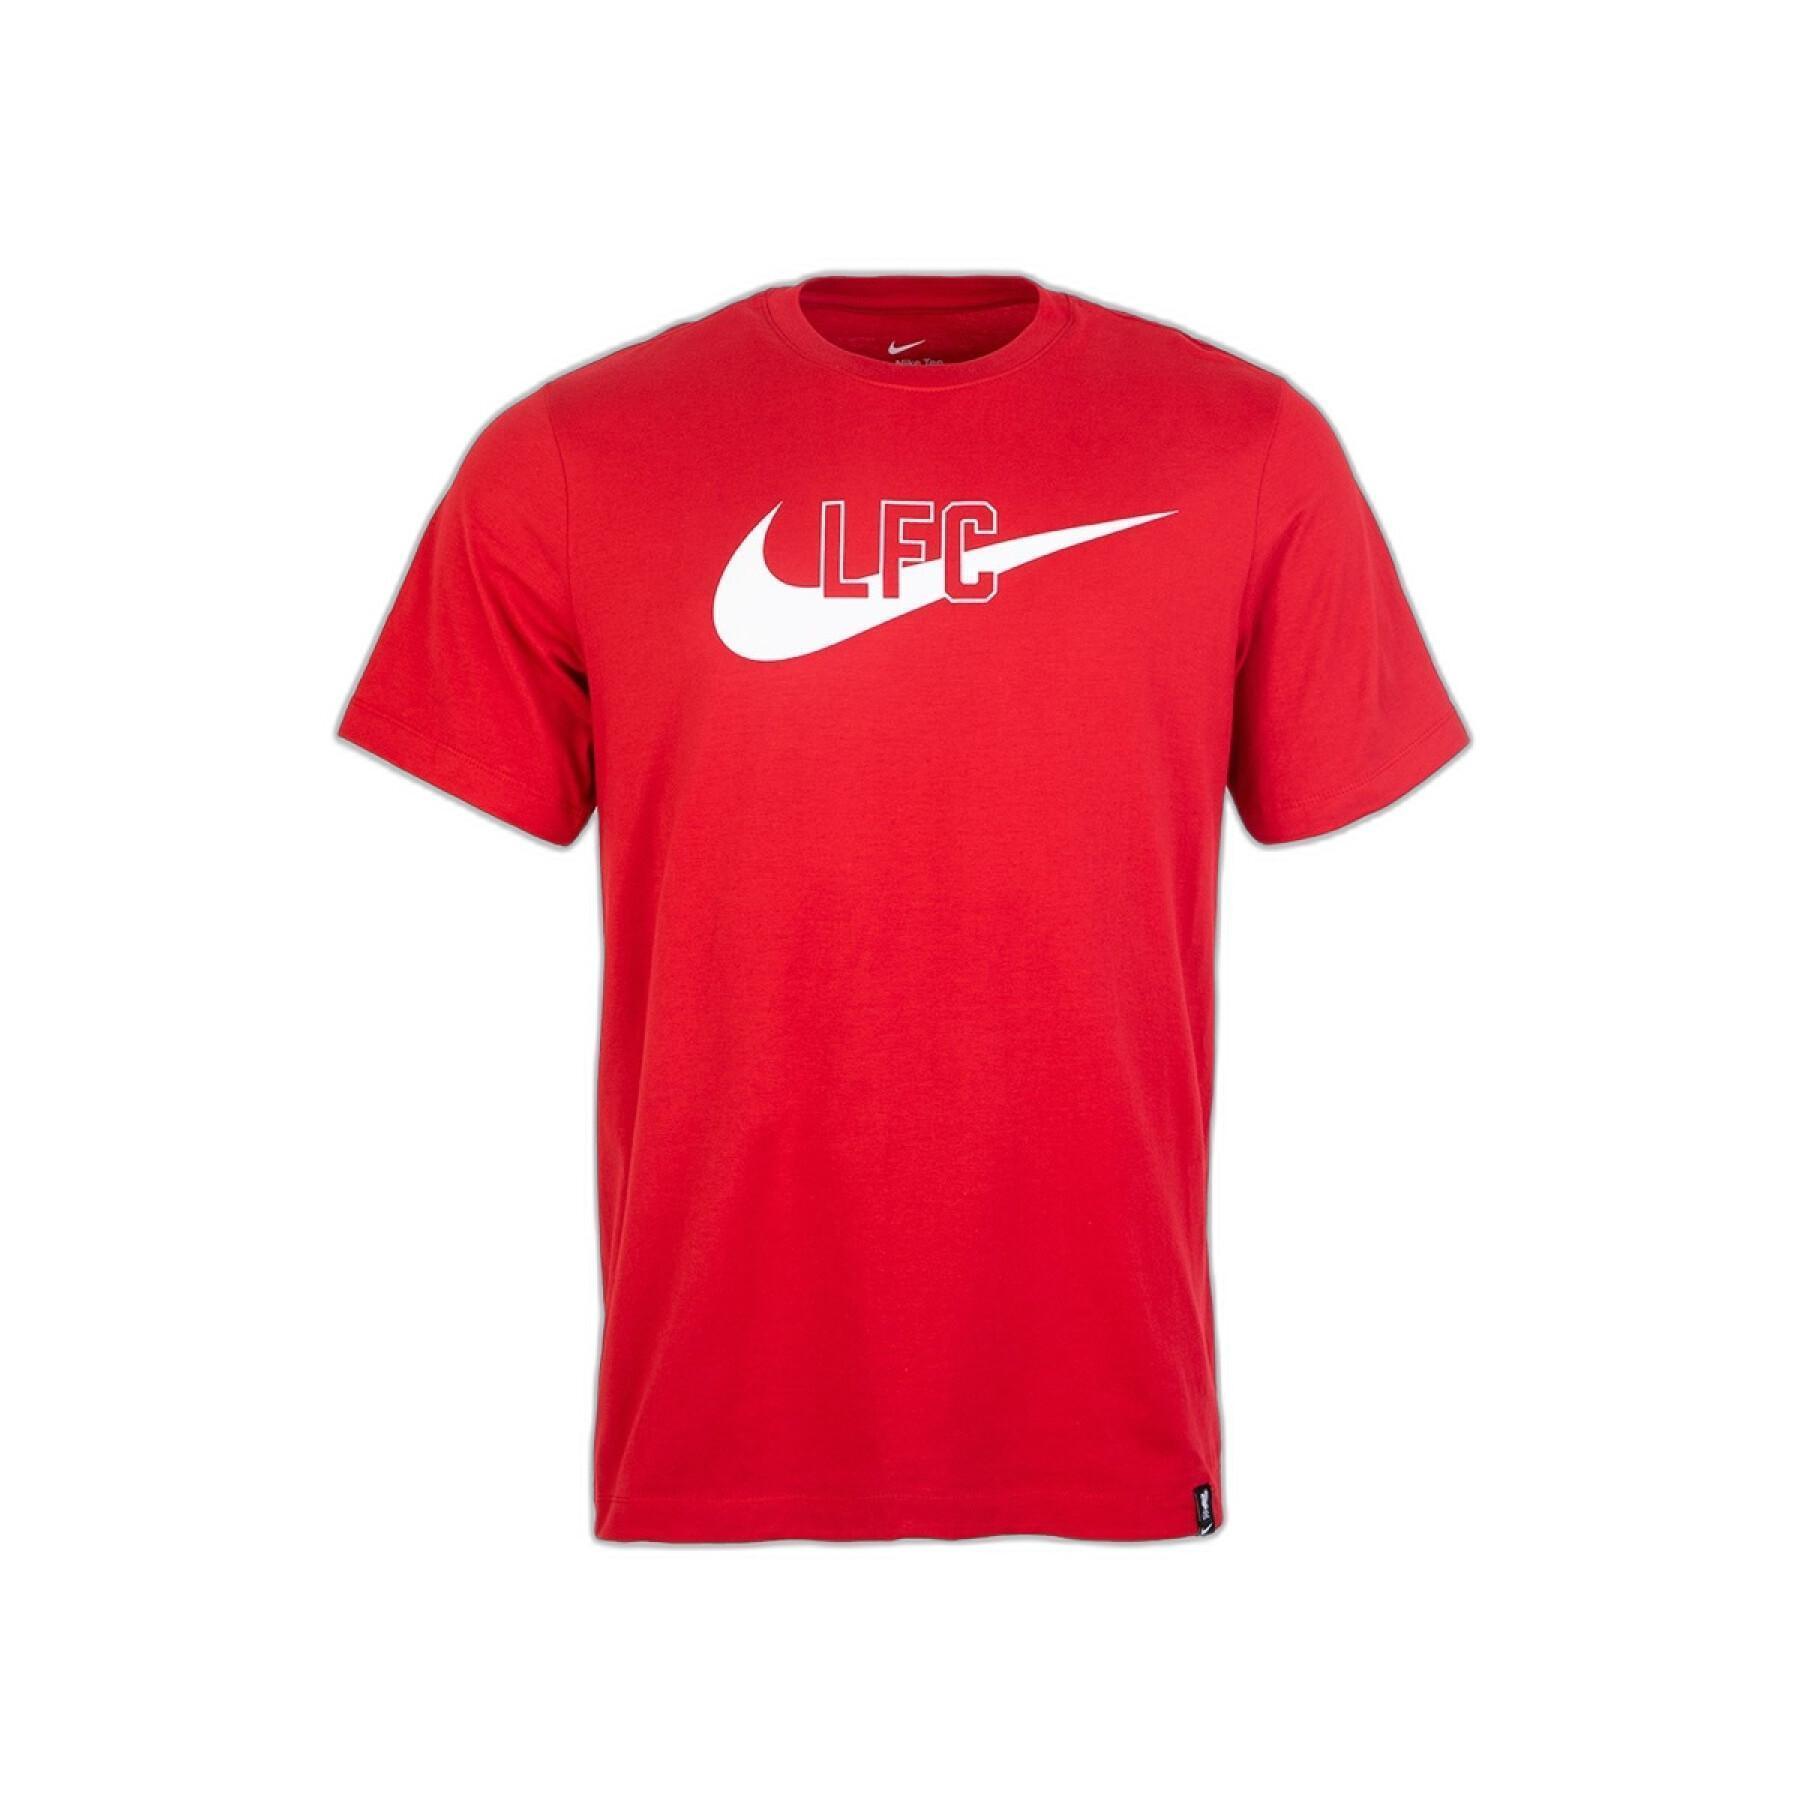 Nike Liverpool FC tričko červené pánske